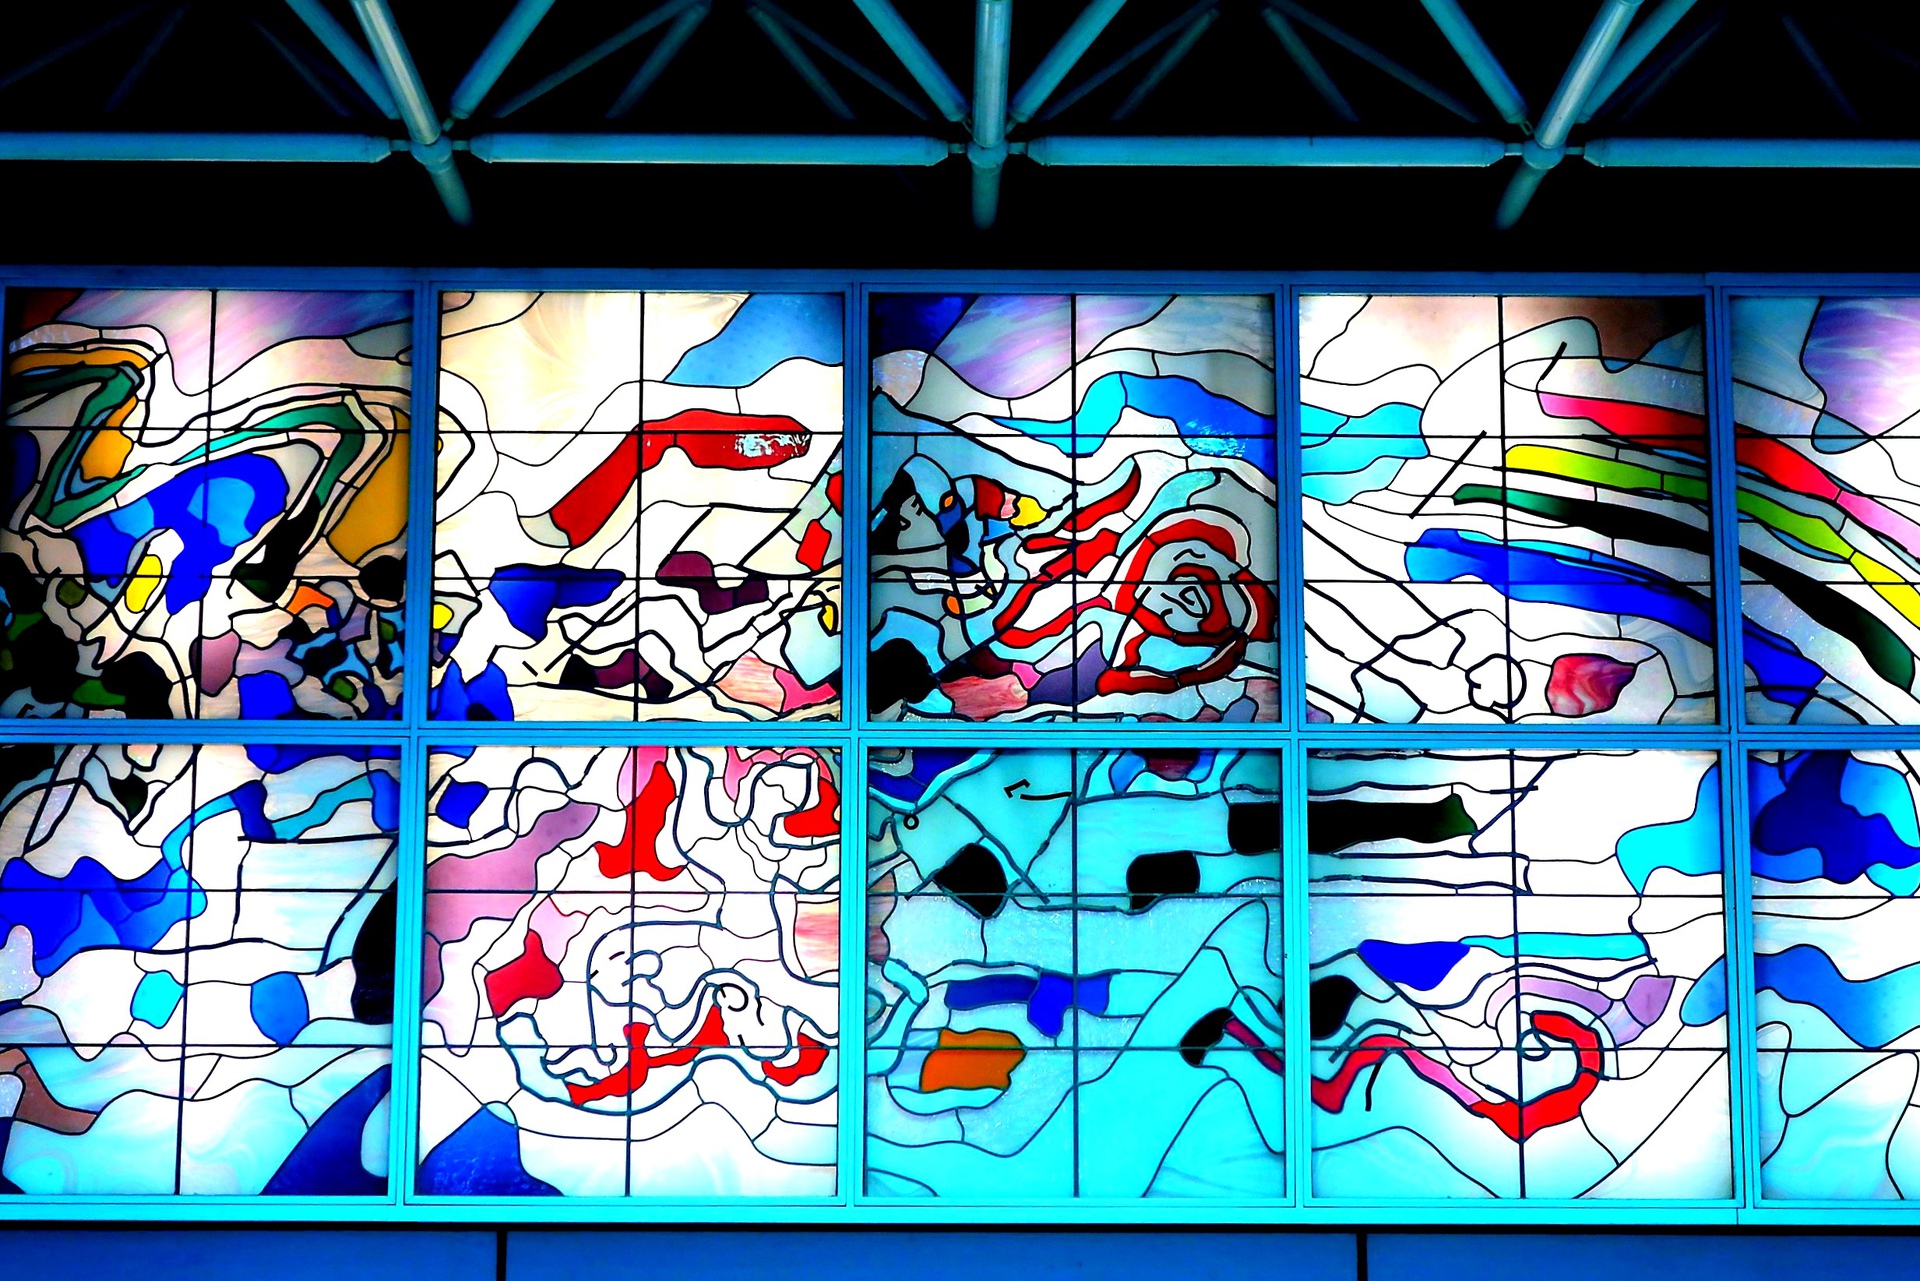 都市 街 室内 品川駅のステンドグラス 壁紙19x1281 壁紙館